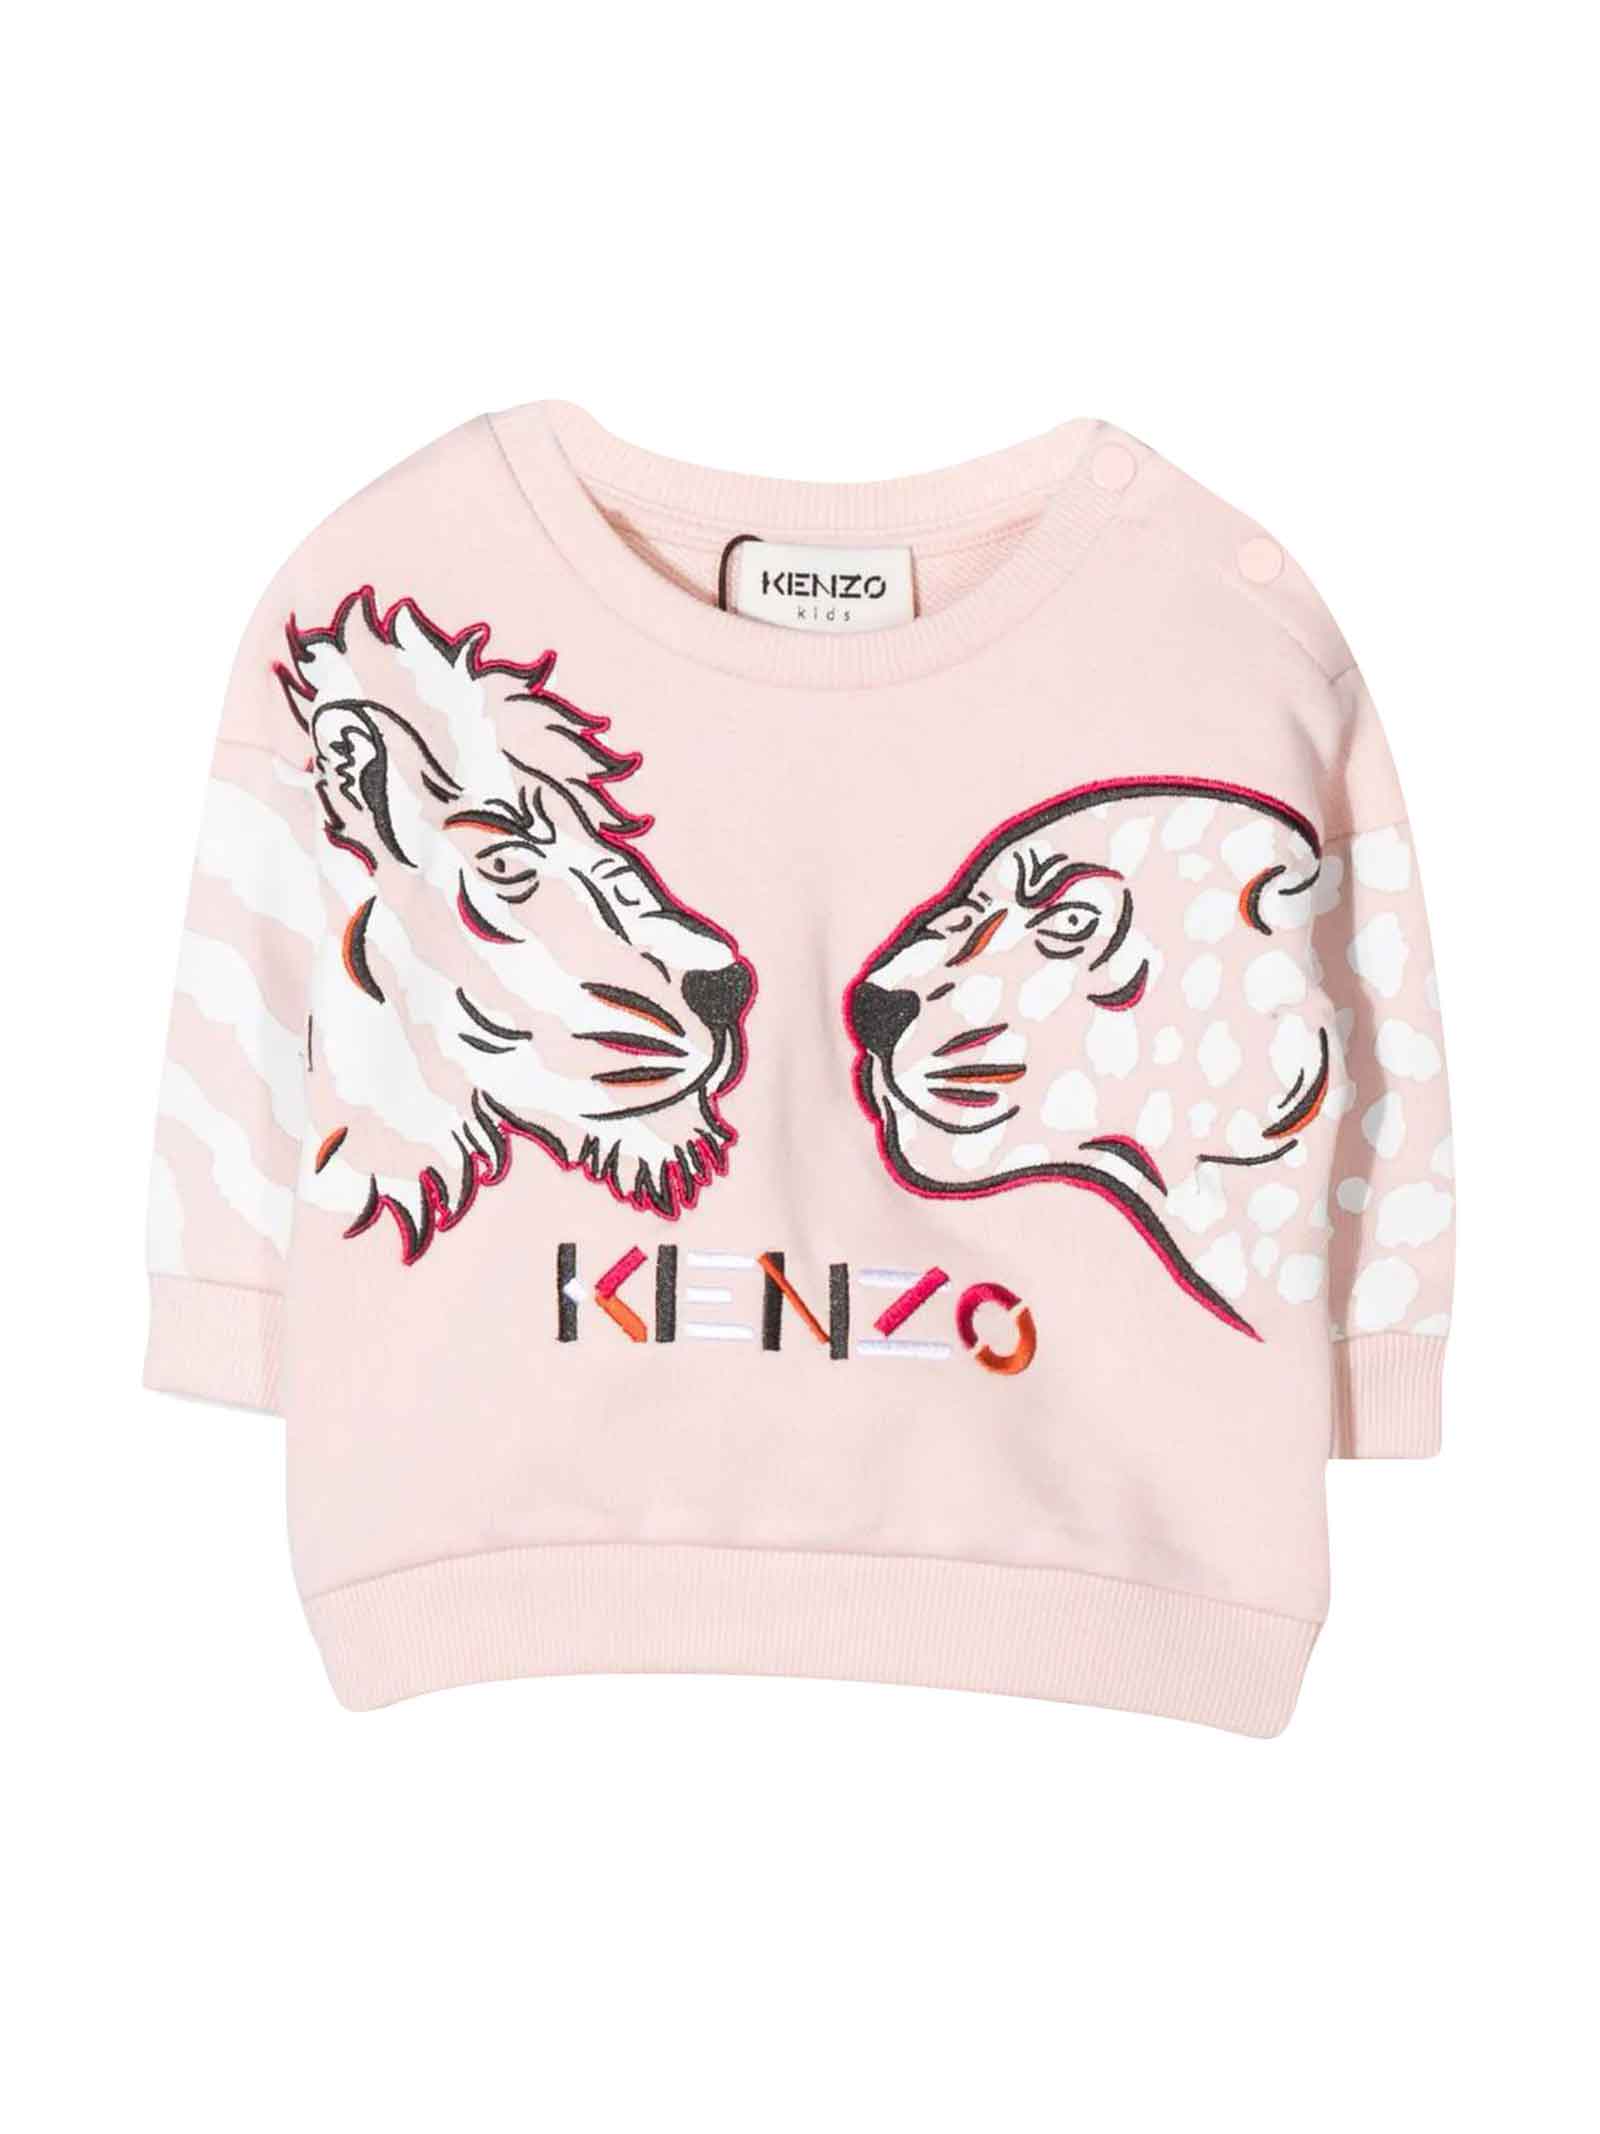 Kenzo Kids Pink Sweatshirt Baby Unisex